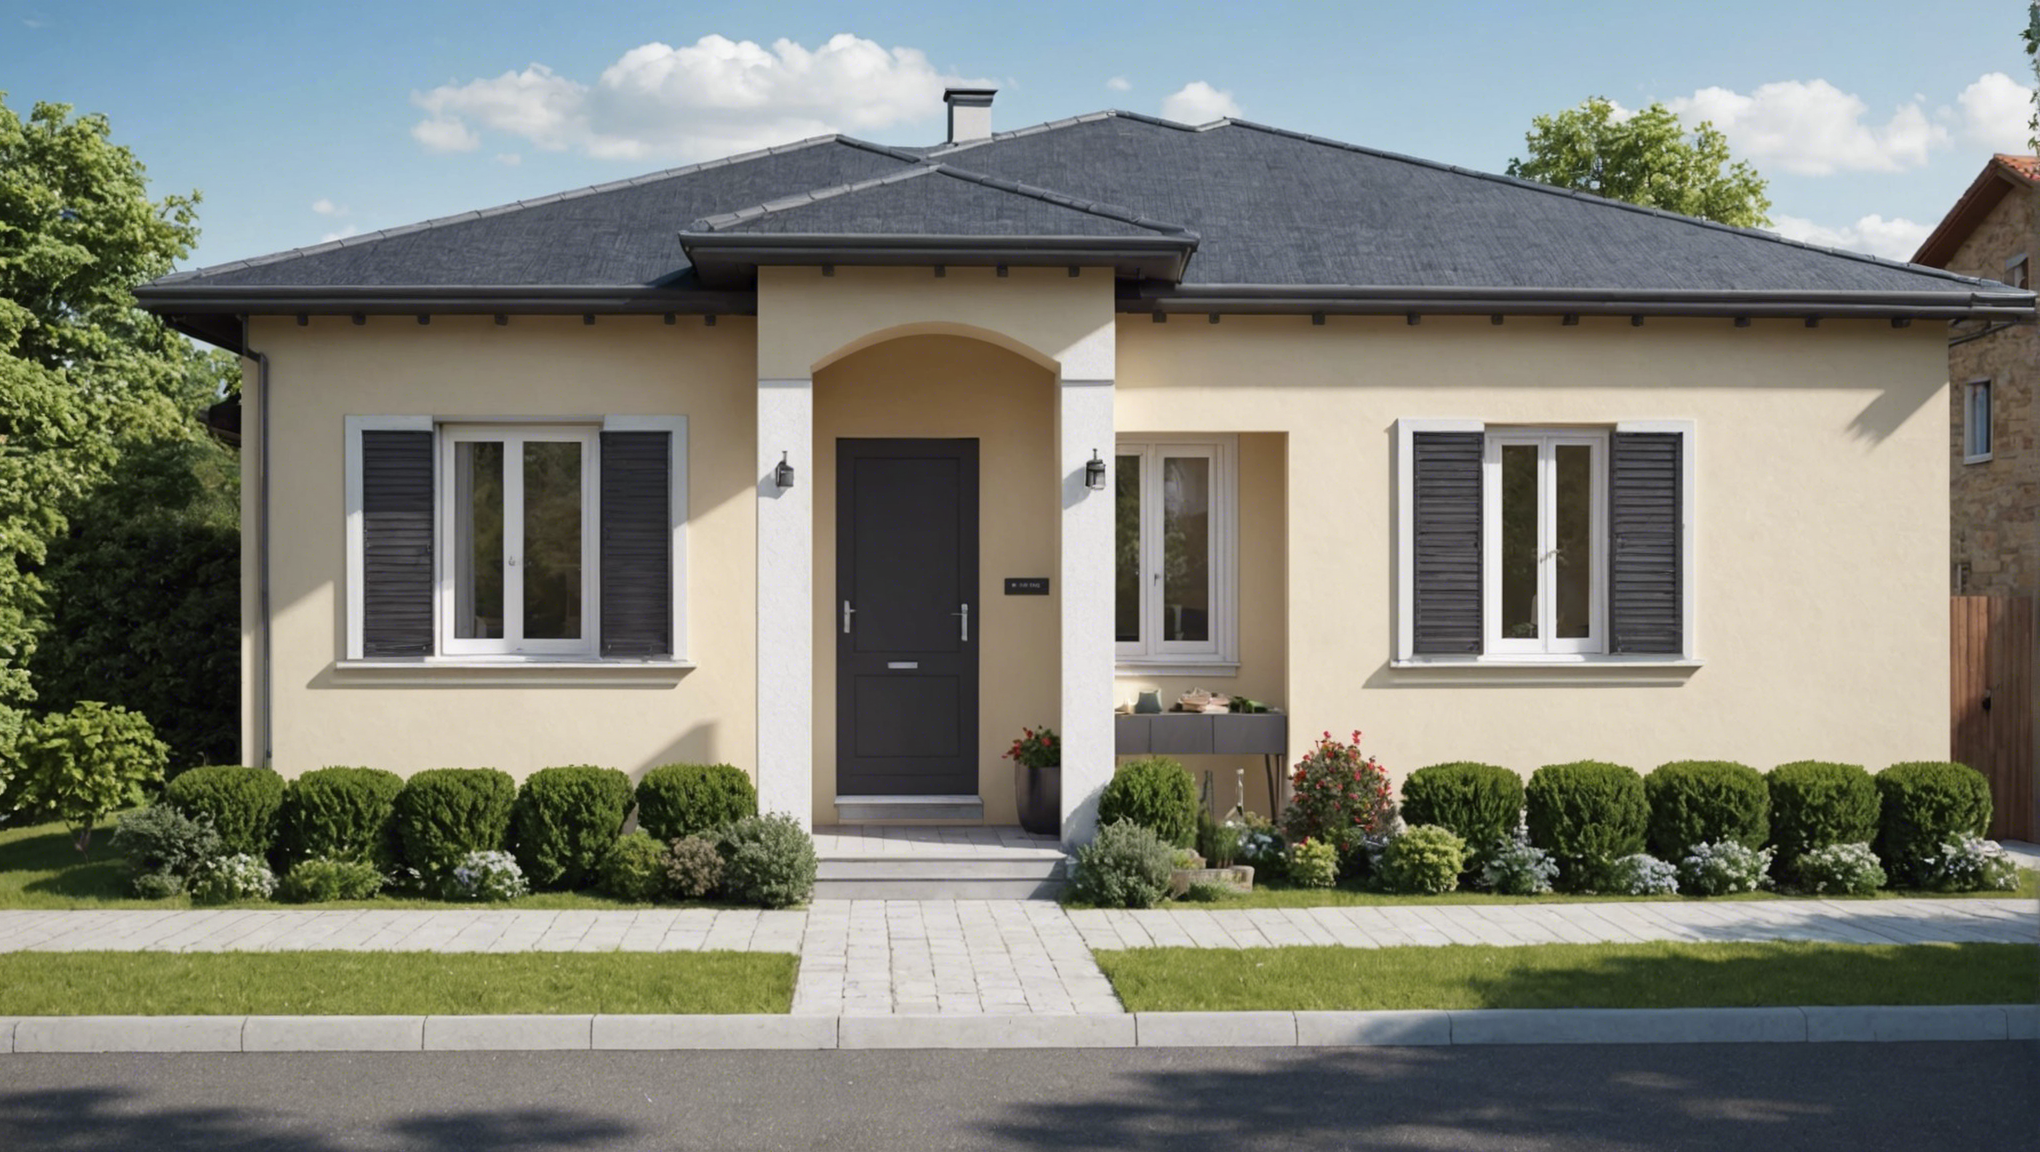 découvrez comment protéger votre maison en souscrivant une assurance clôture. obtenez une couverture optimale pour sécuriser votre propriété et vos biens contre les dommages et les intrusions.